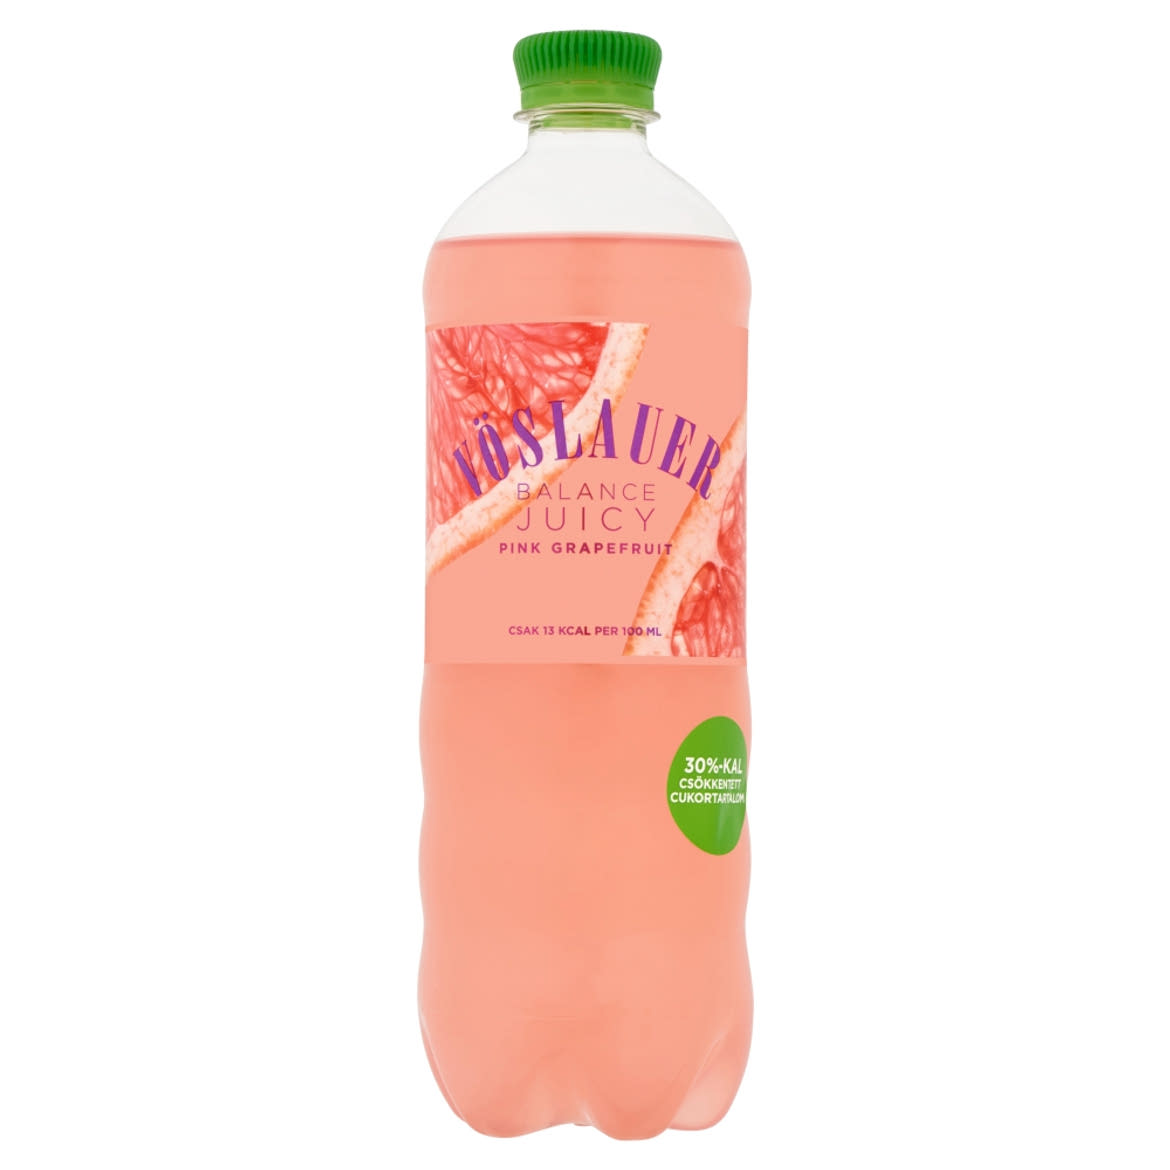 Vöslauer Balance Juicy pink grapefruitízű szénsavas üdítőital